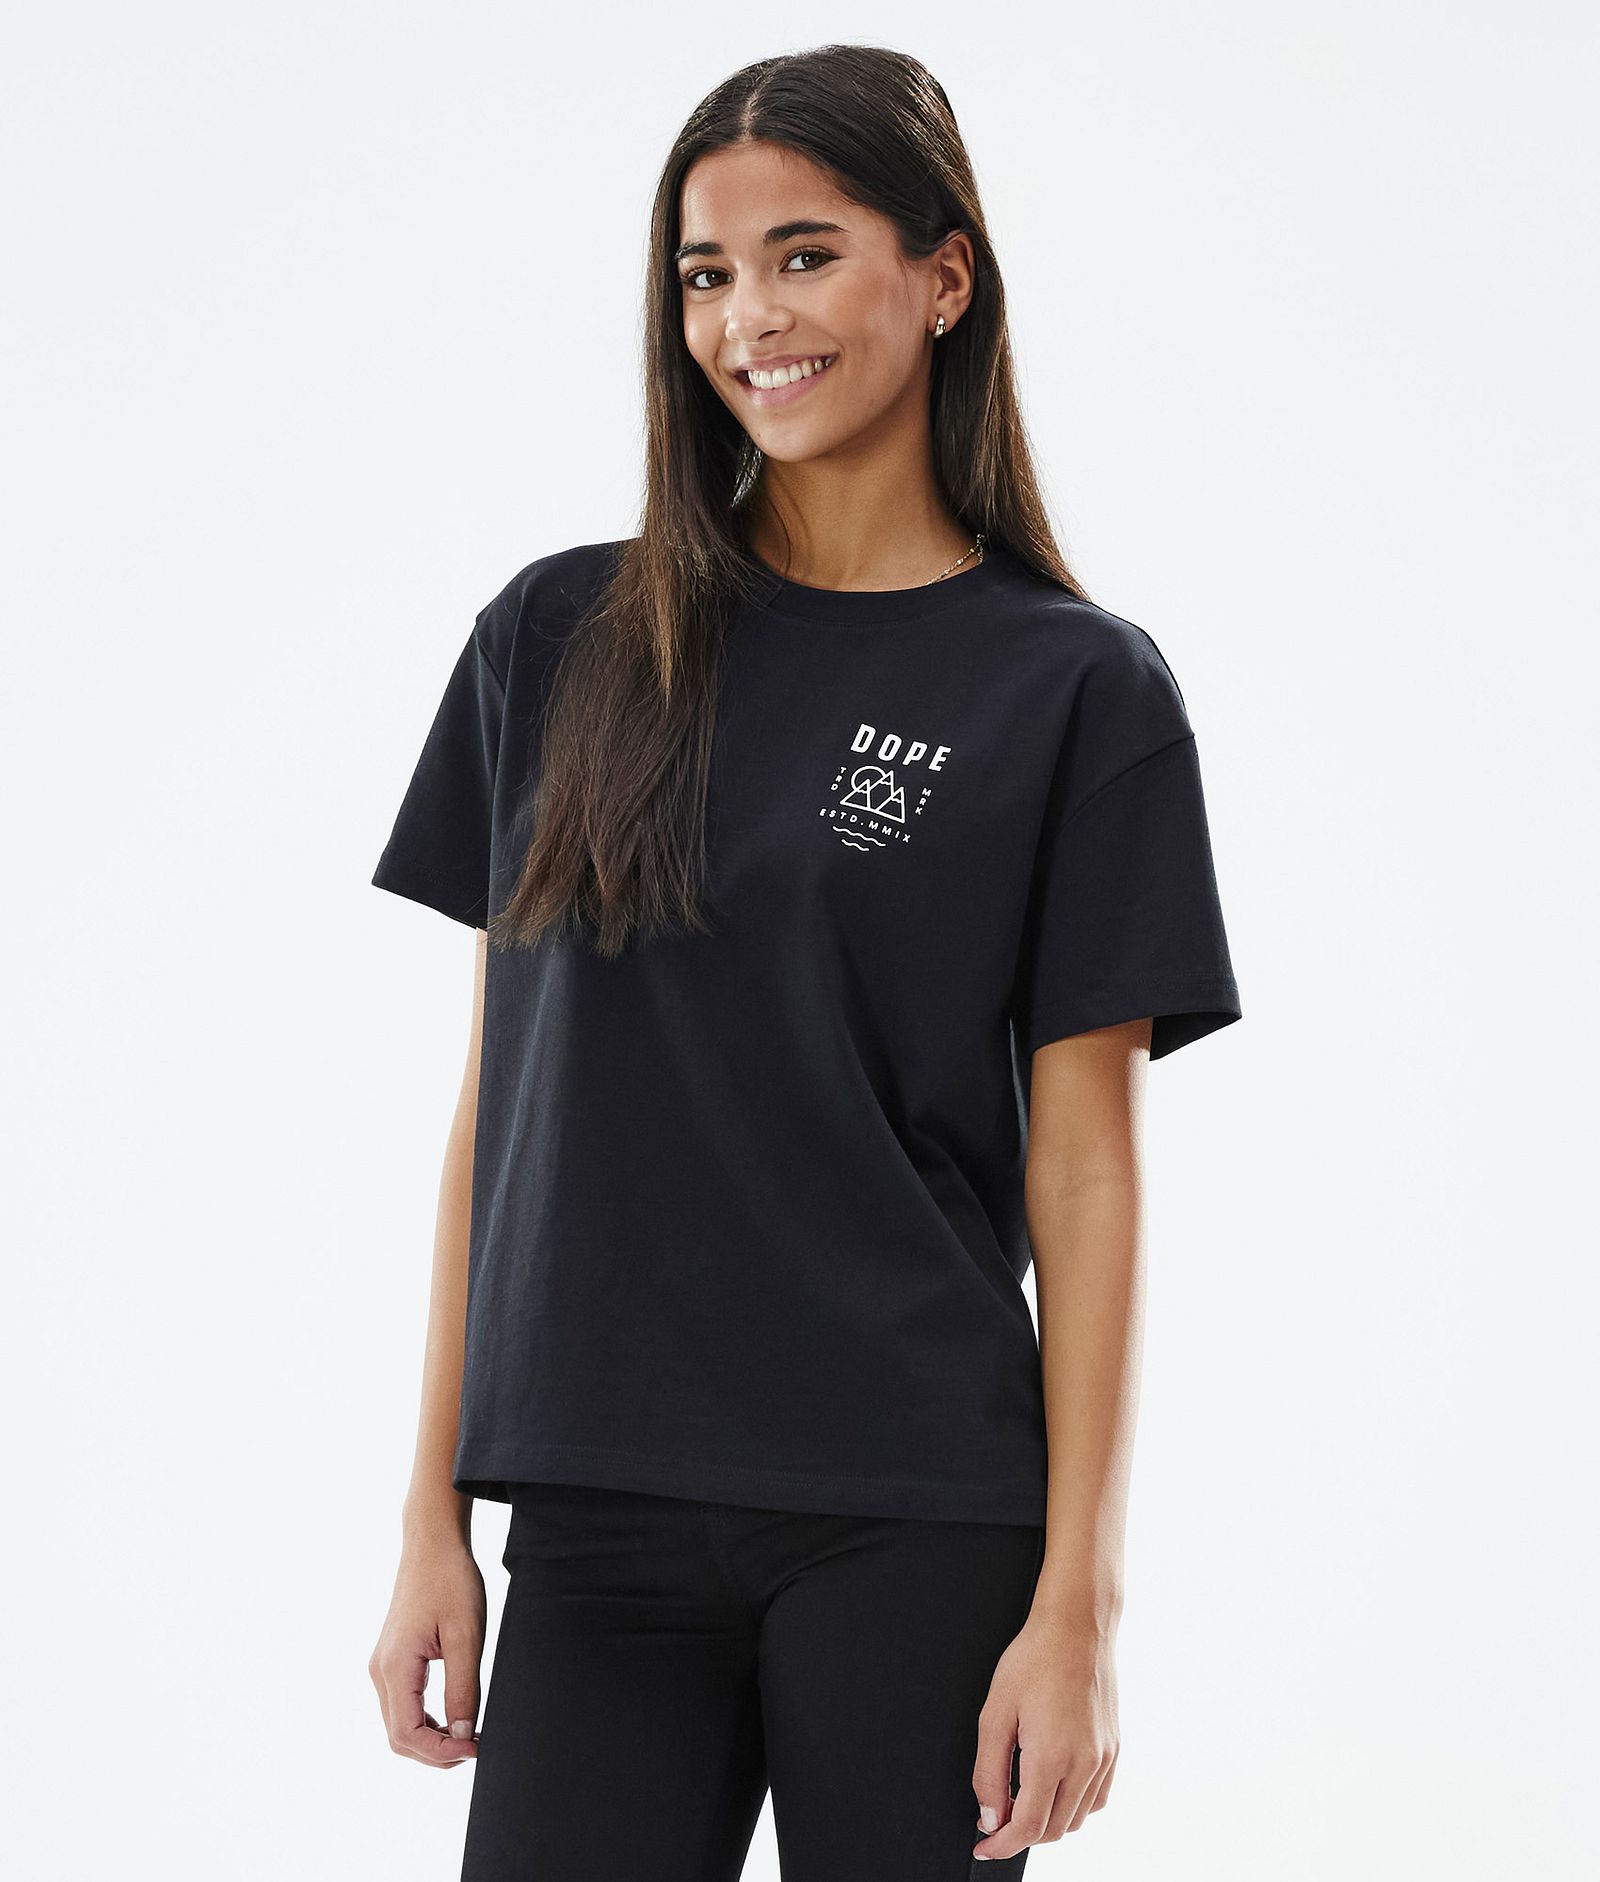 Dope Standard W 2022 T-shirt Women Summit Black